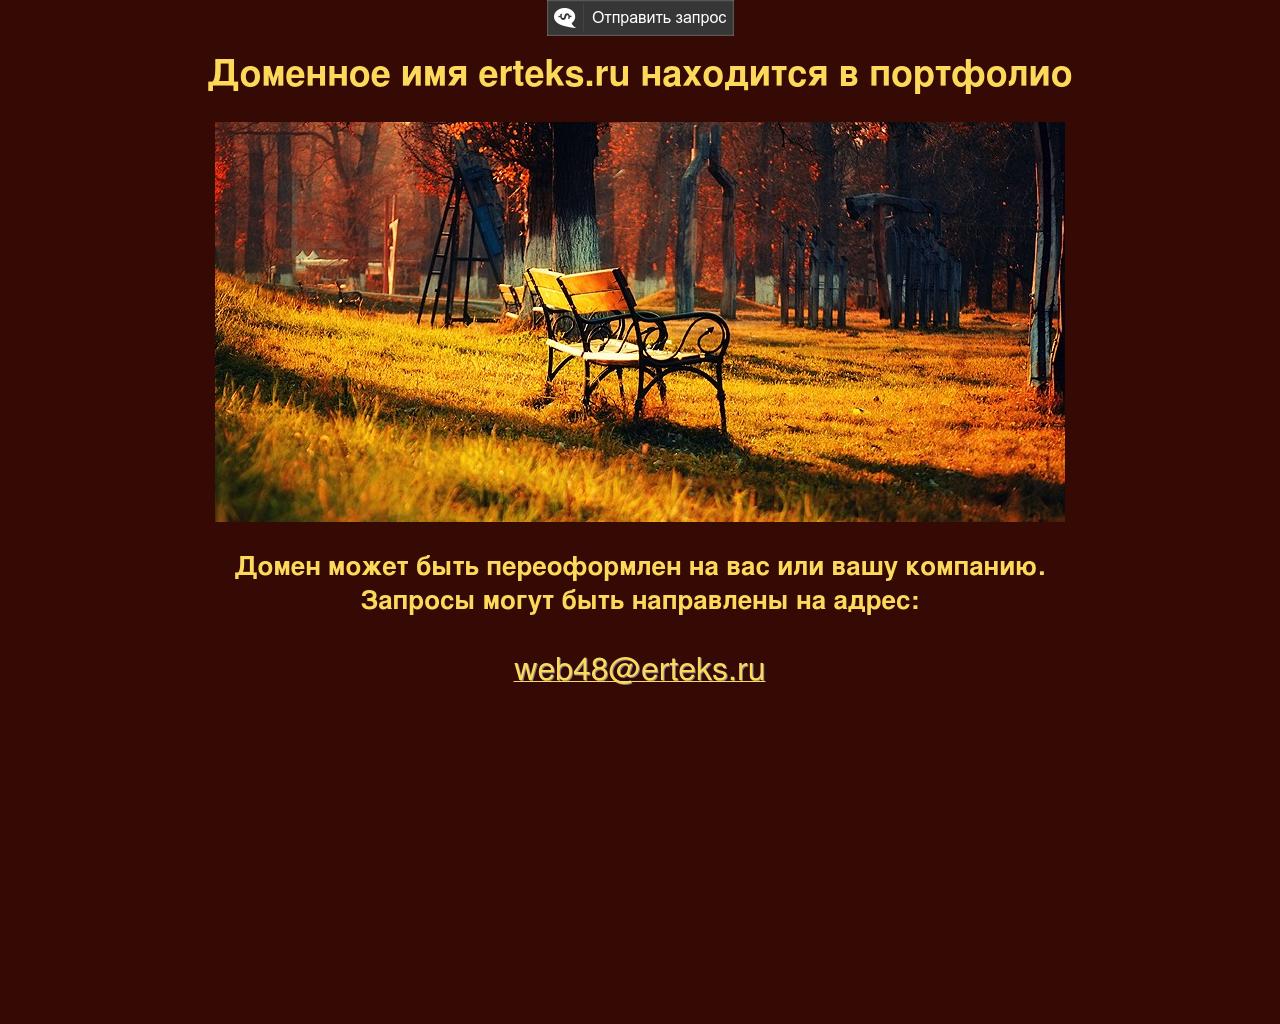 Изображение сайта erteks.ru в разрешении 1280x1024